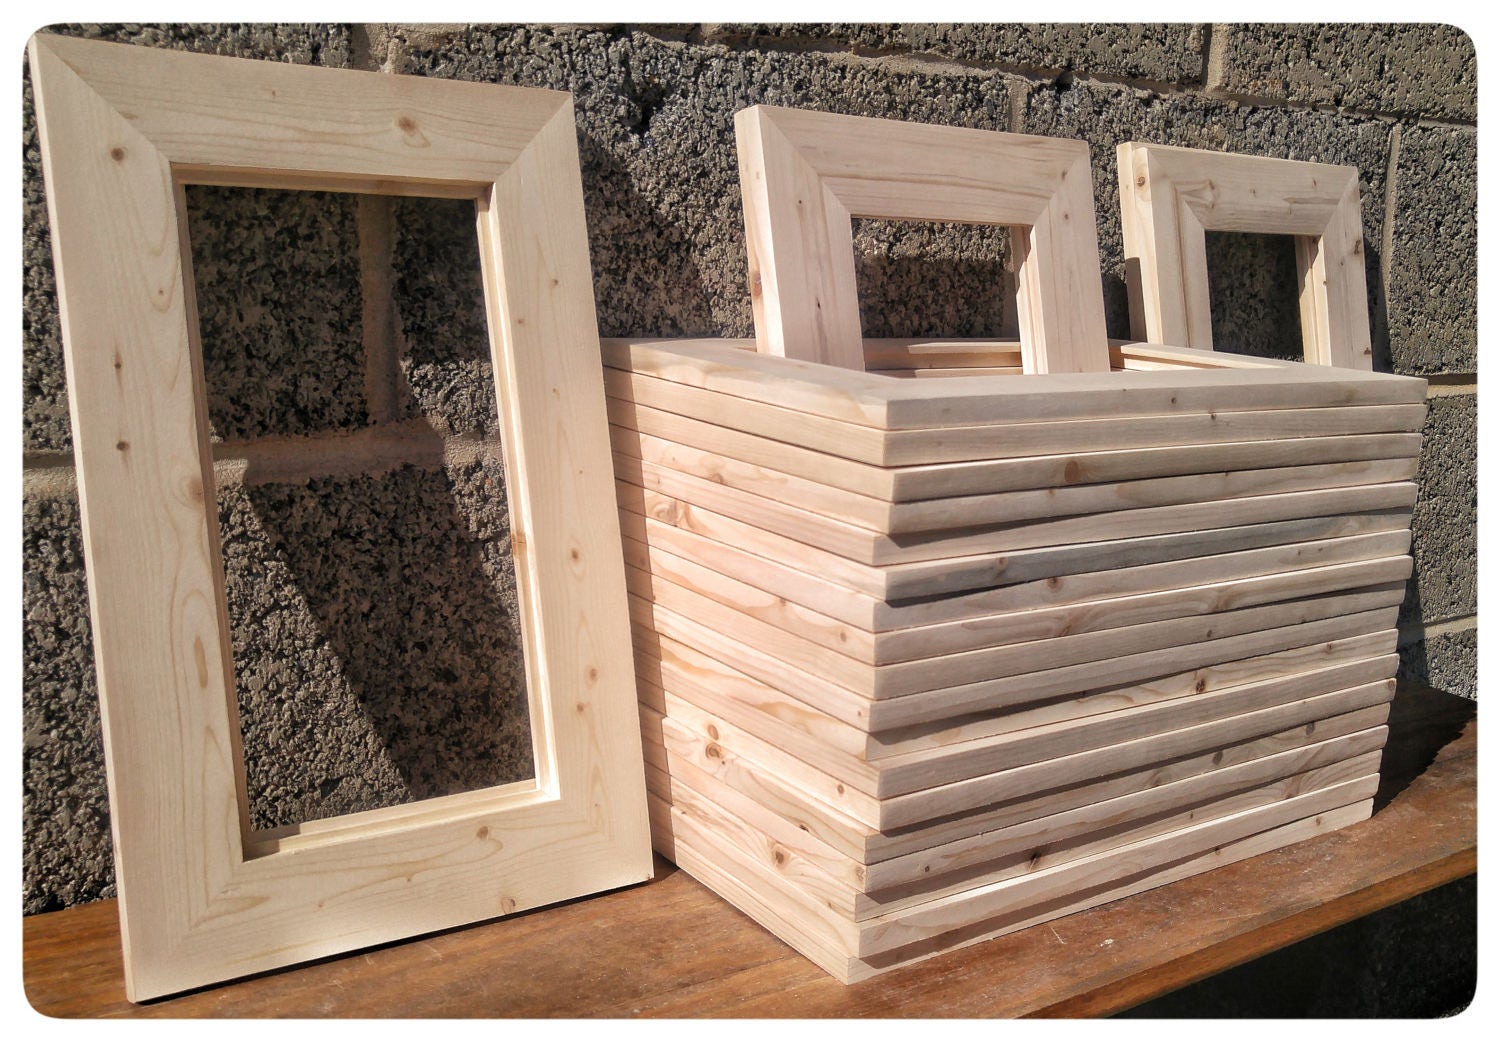 25 Wood Frames No Hardware or Glass Bulk Wood Frames | Etsy